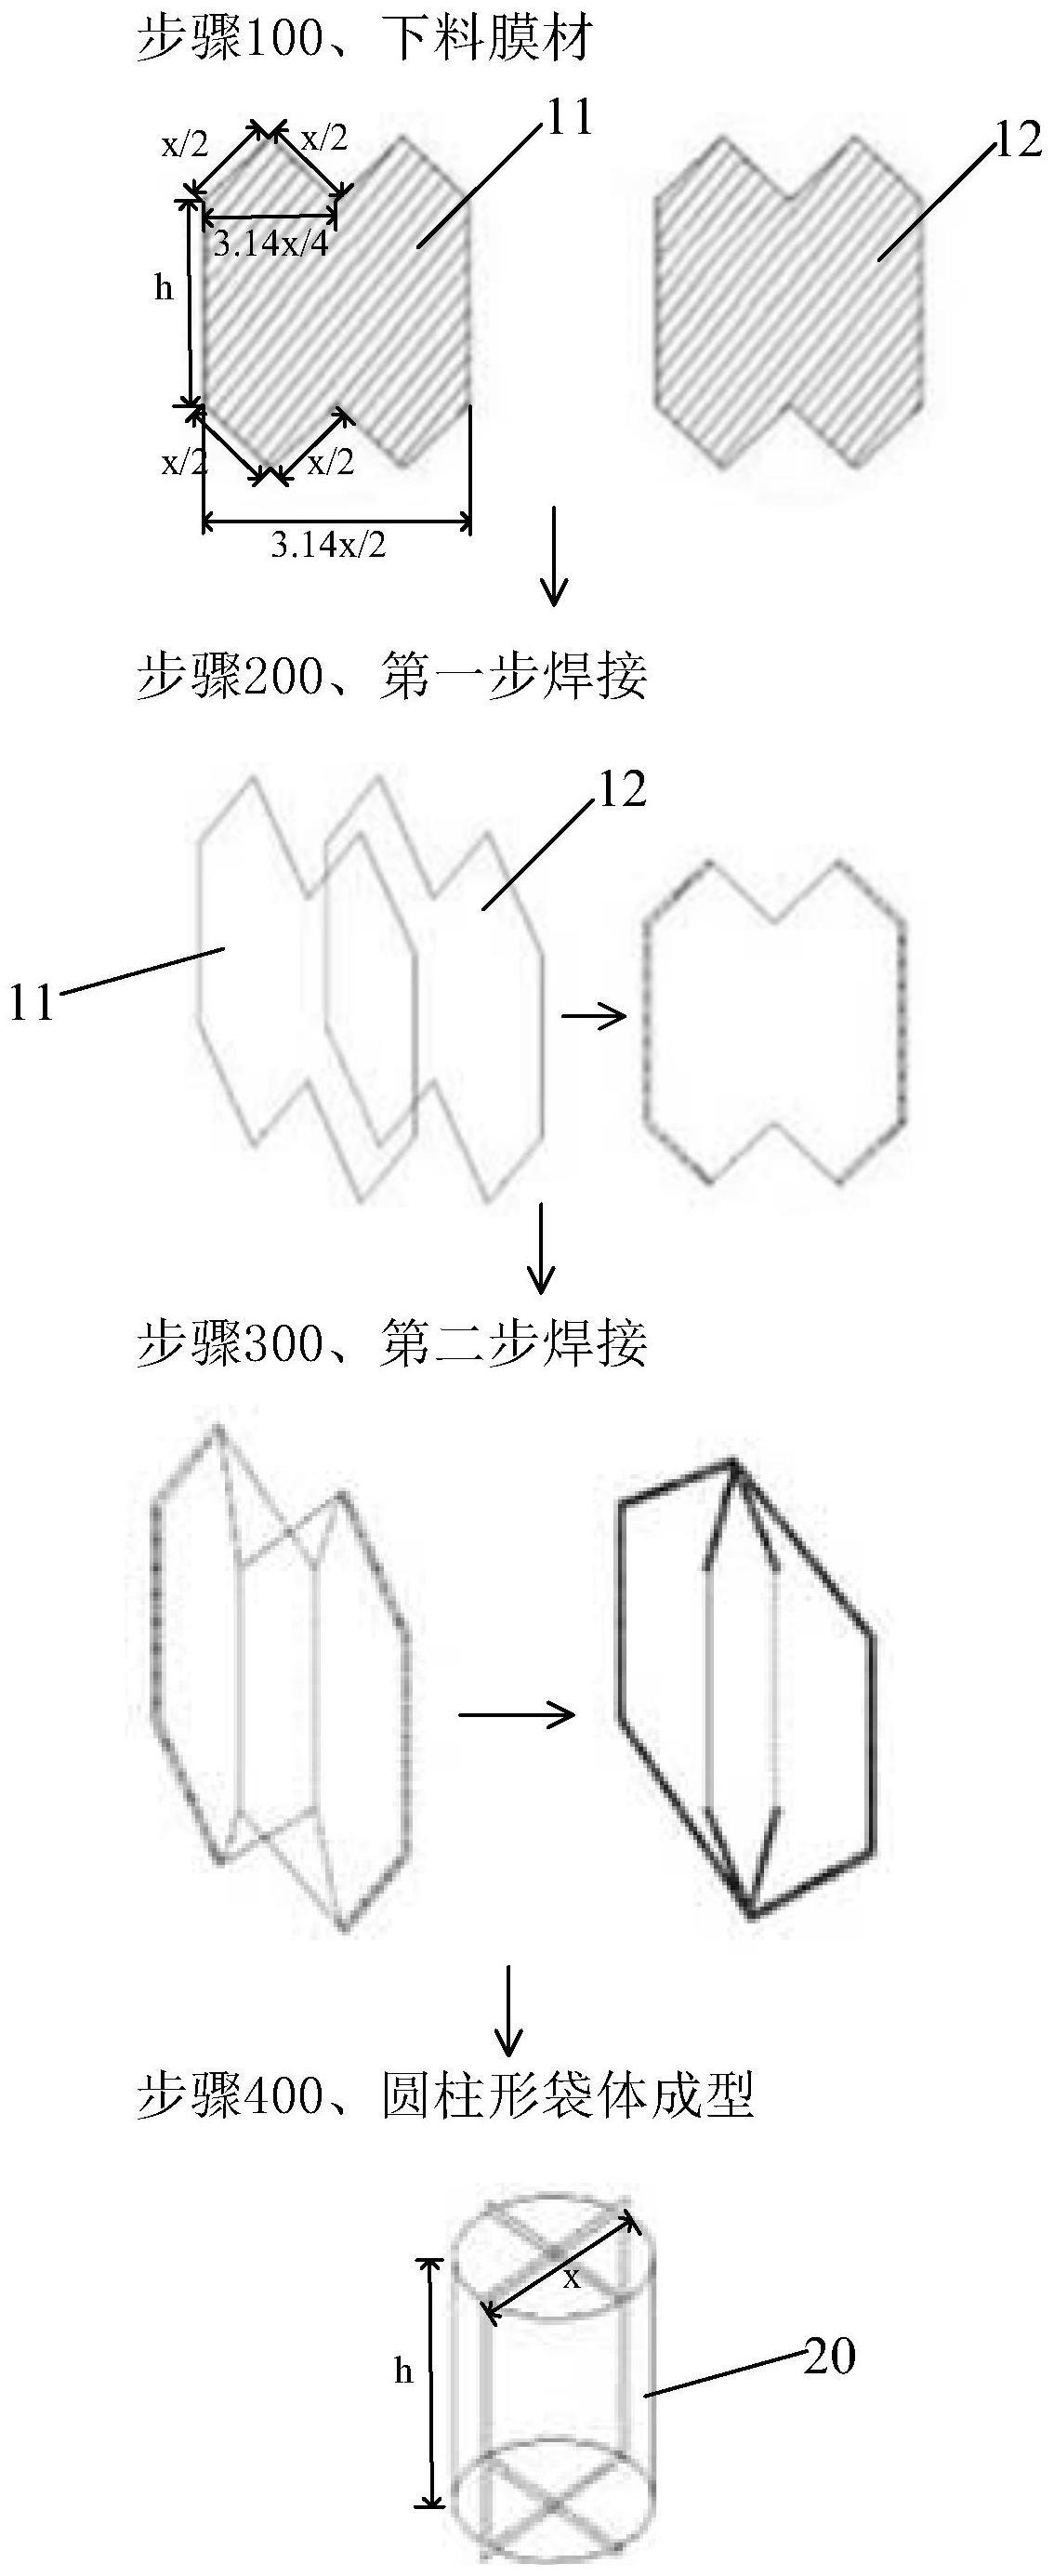 圆柱形袋体成型方法与流程